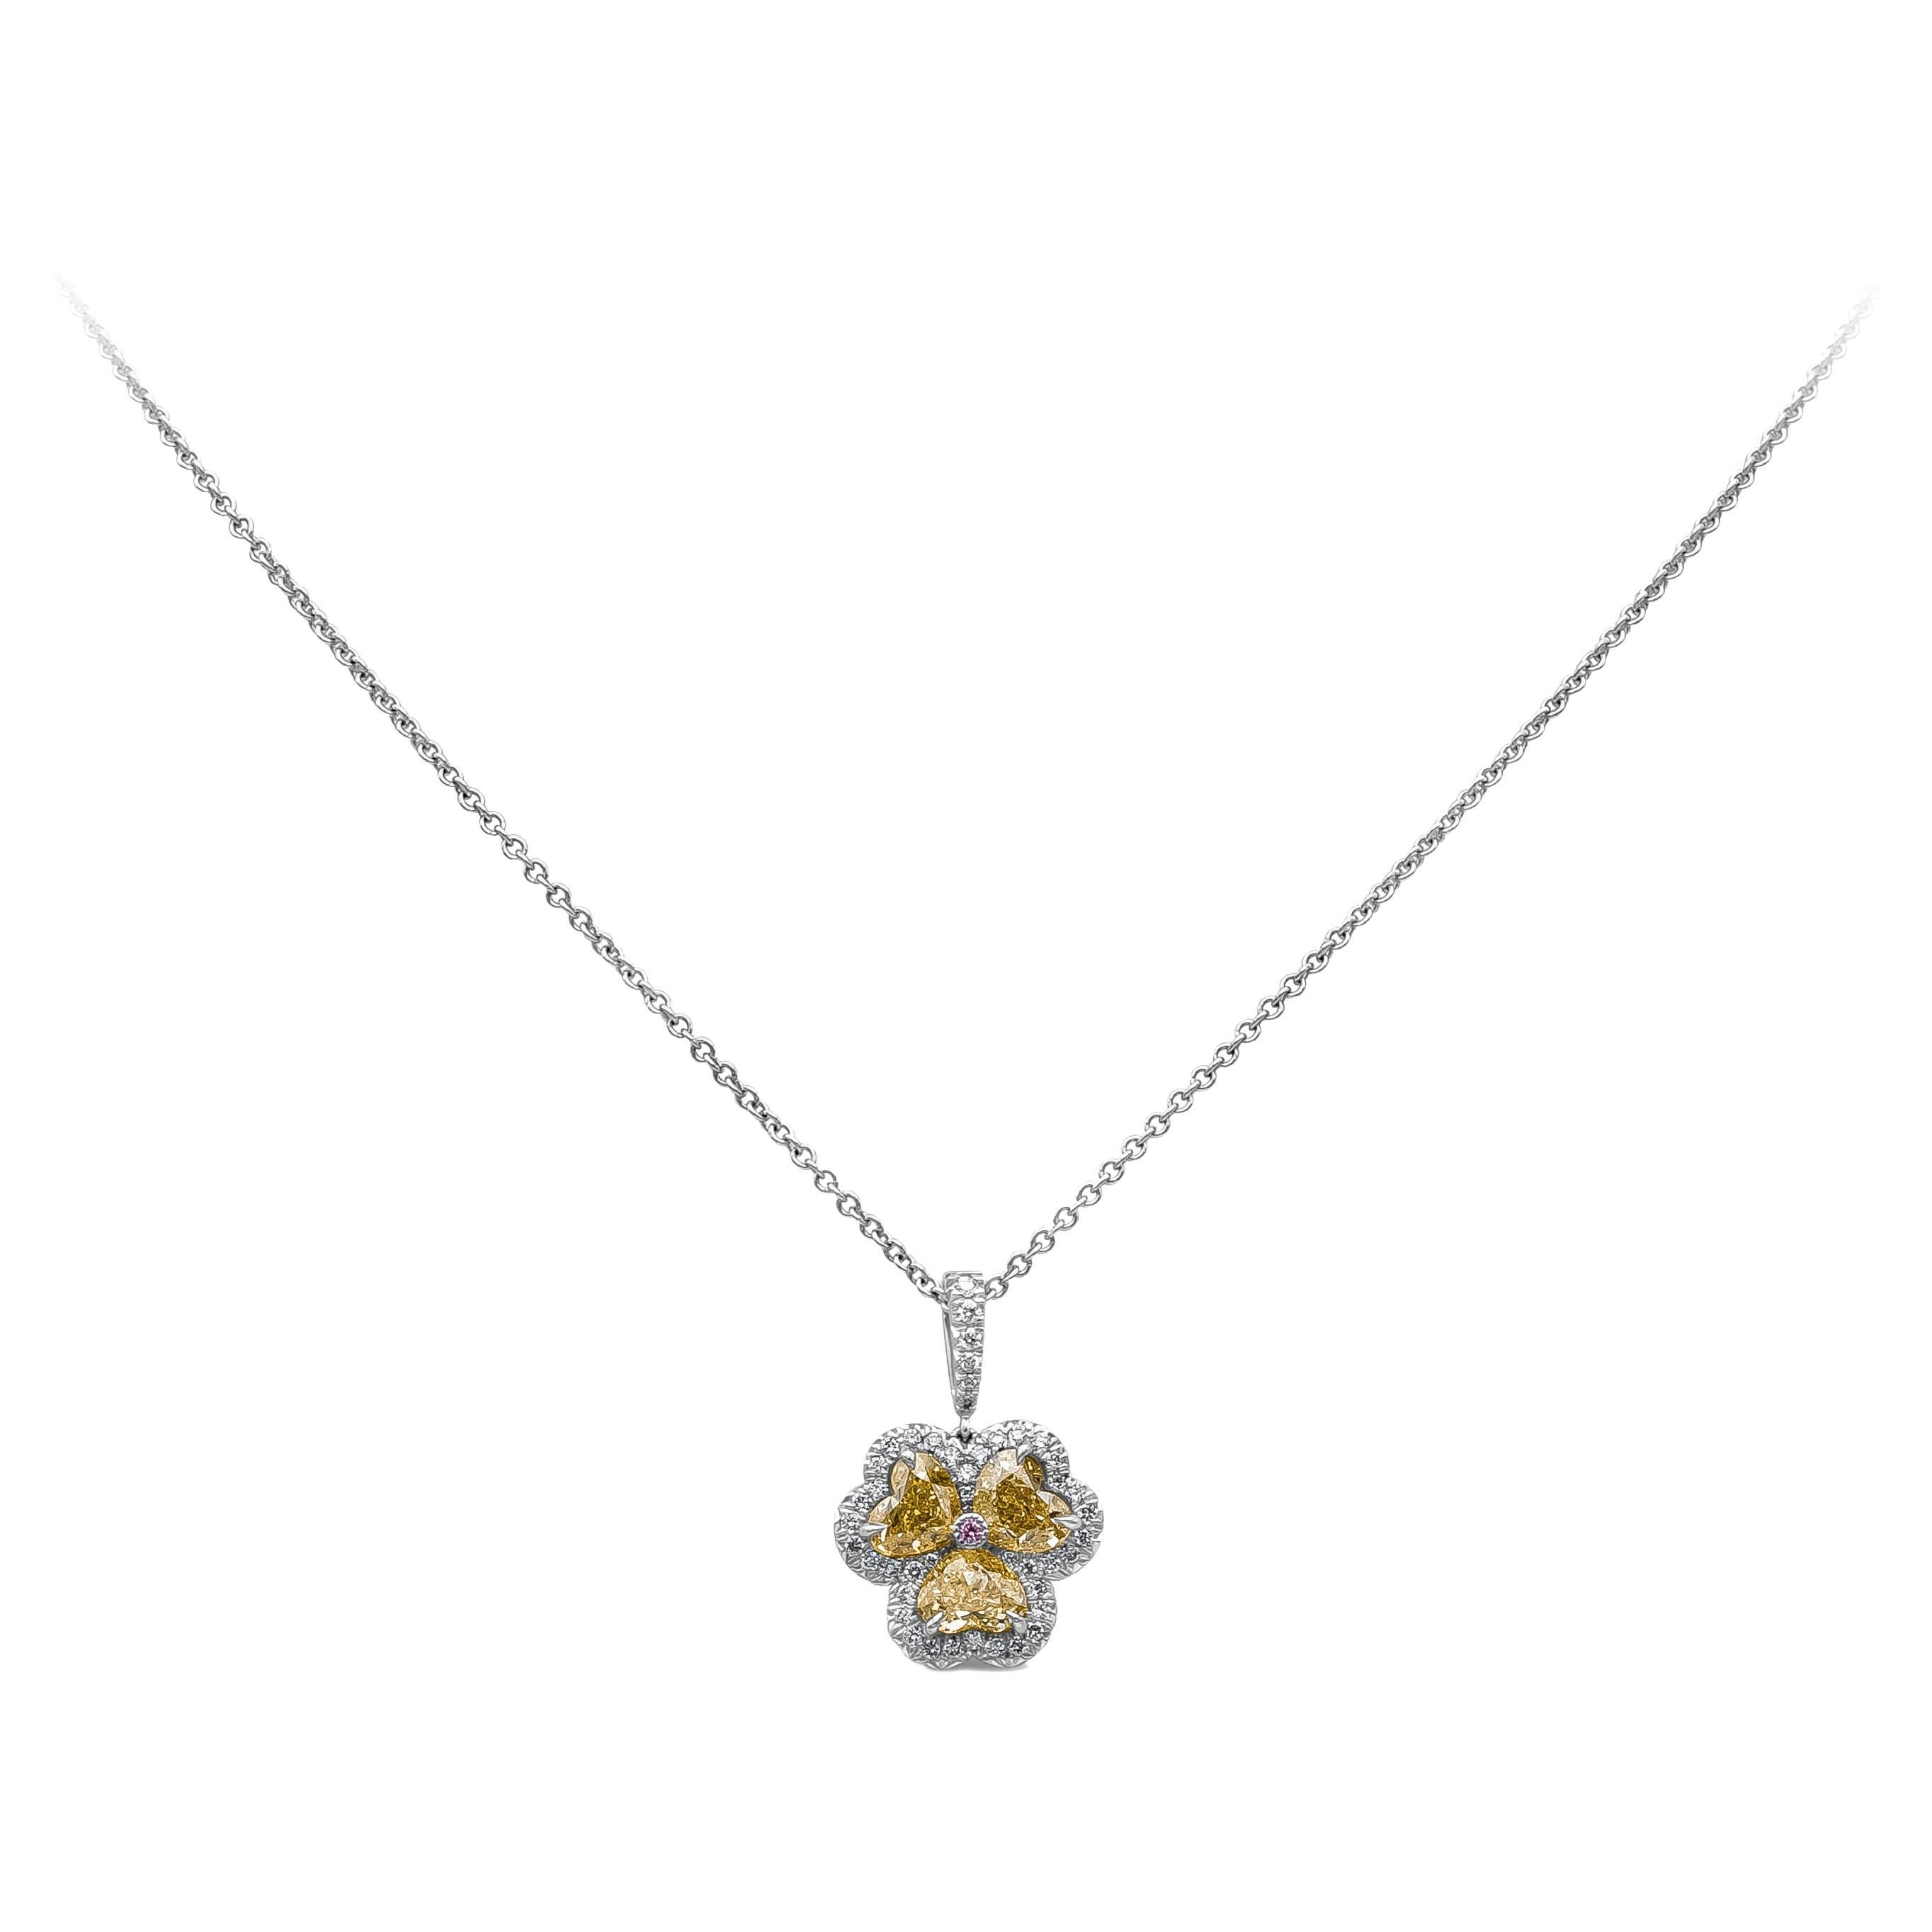 Roman Malakov, Halskette mit Anhänger, insgesamt 1,66 Karat gelber Fancy-Diamant